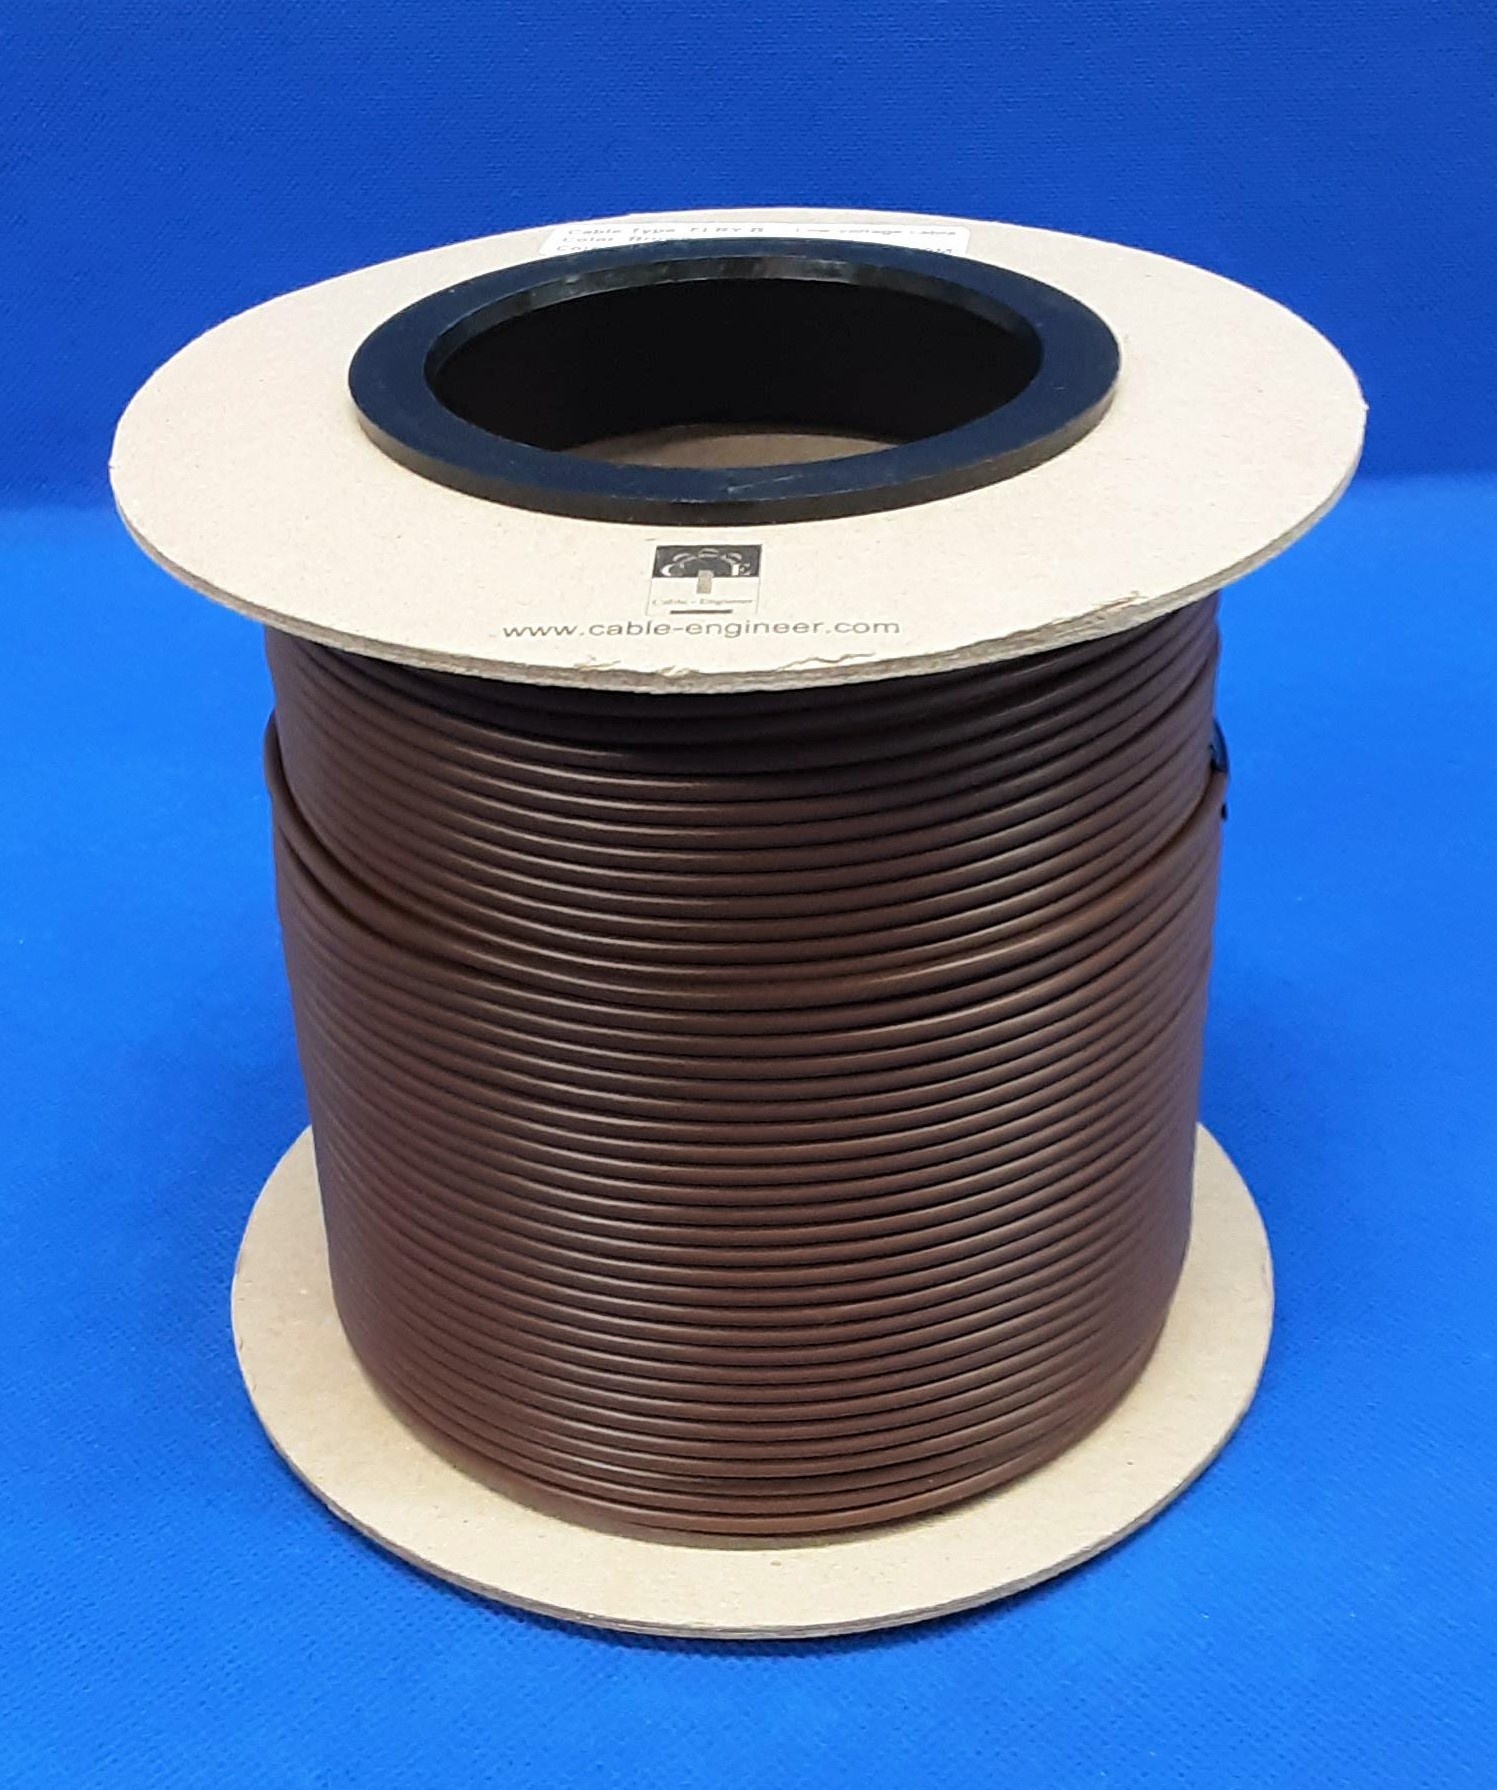 FLRY-B kabel 1,5mm - voertuigkabel - 100m. op rol - Kleur Geel/GROEN 